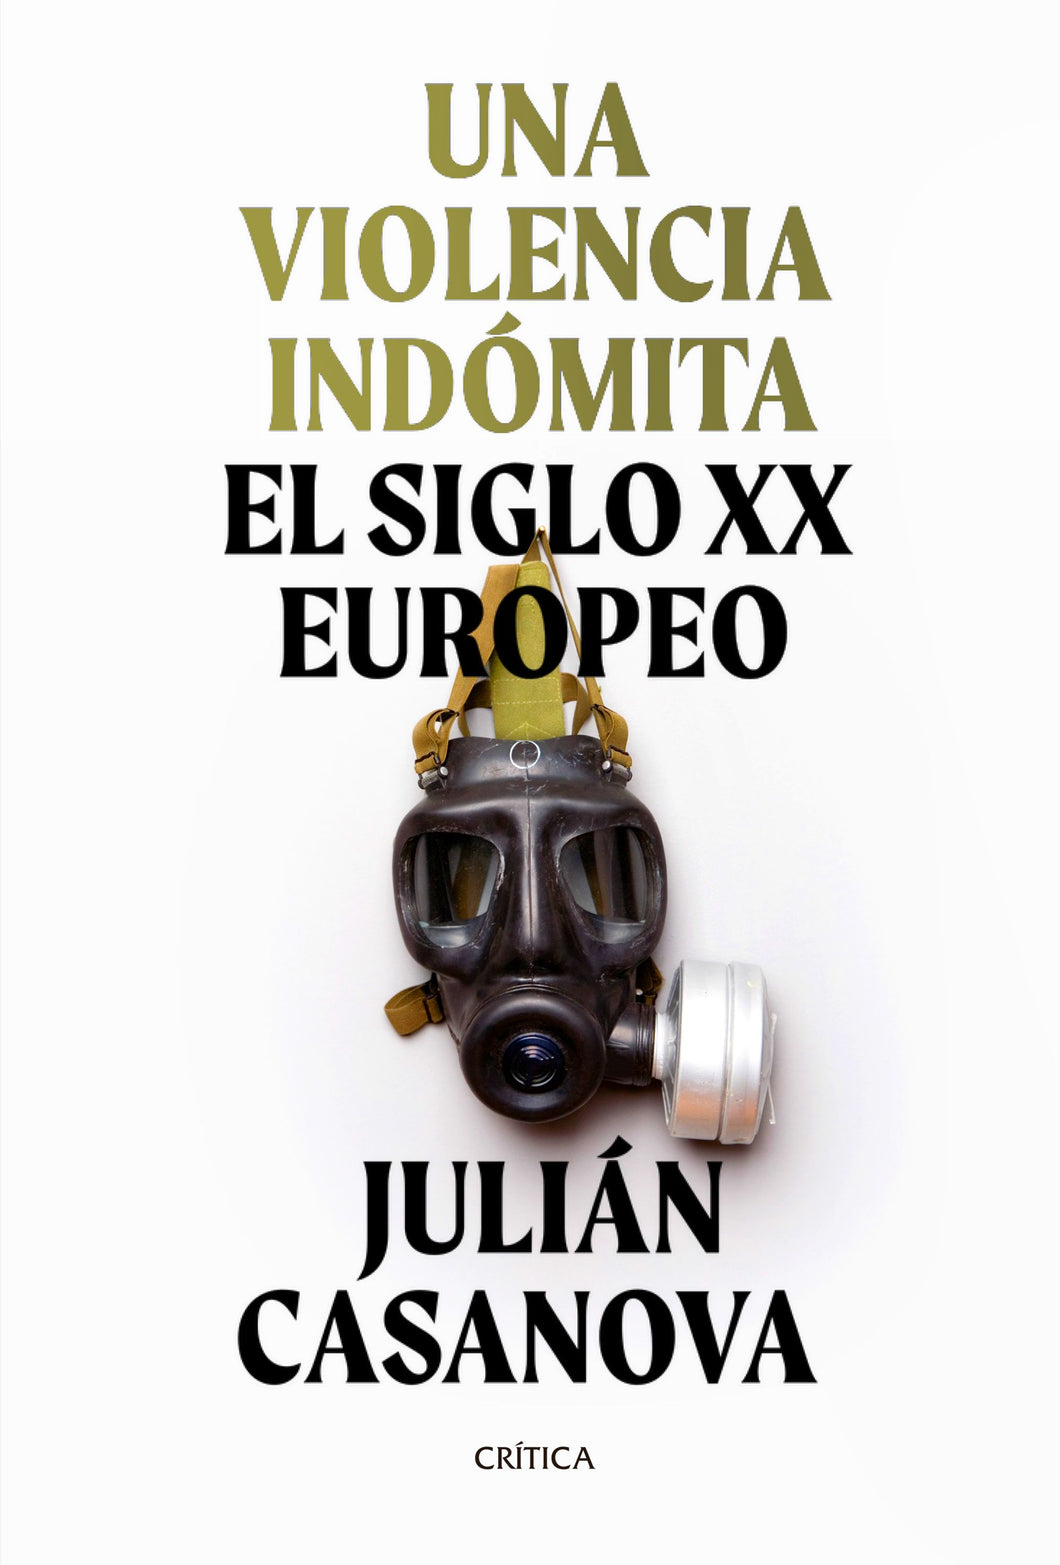 UNA VIOLENCIA INDÓMITA: EL SIGLO XX EUROPEO - Julián Casanova